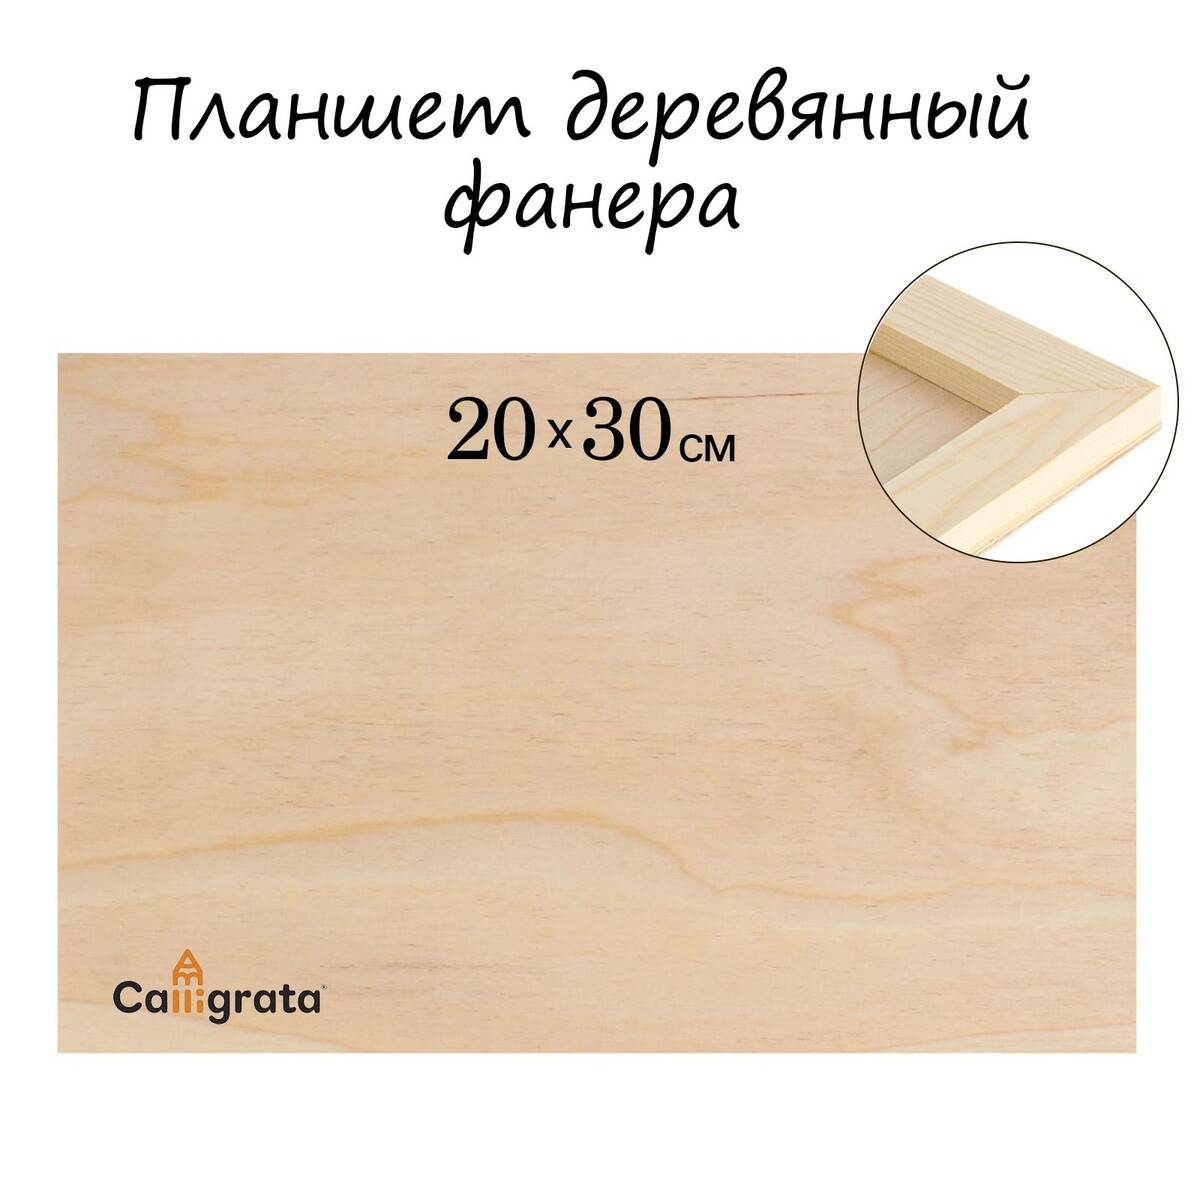 Планшет деревянный 20 х 30 х 2 см, фанера планшет деревянный 40 х 50 х 2 см двп